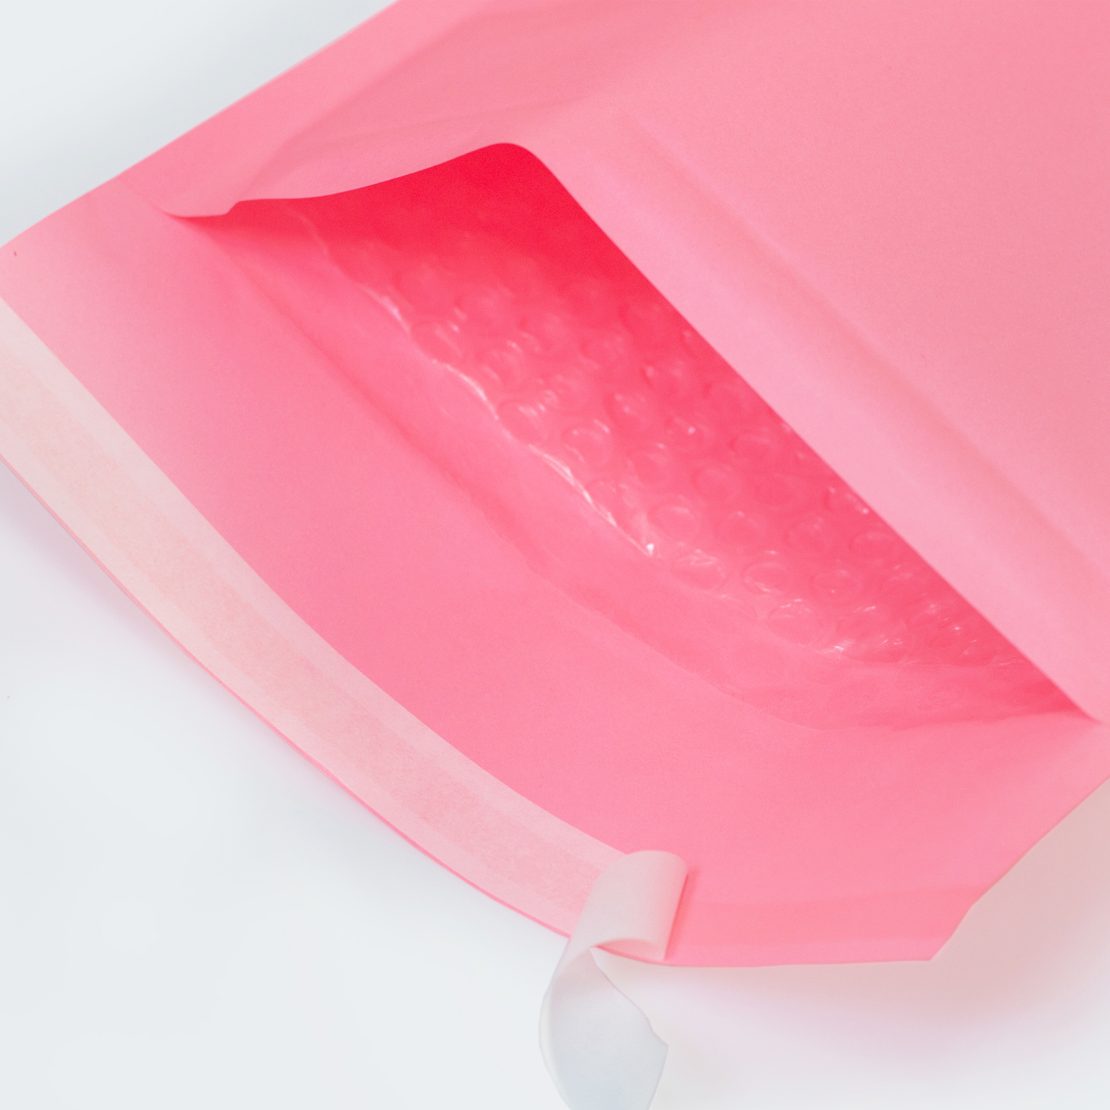 Różowa koperta bąbelkowa, zbliżenie otwartej koperty, folia bąbelkowa w środku